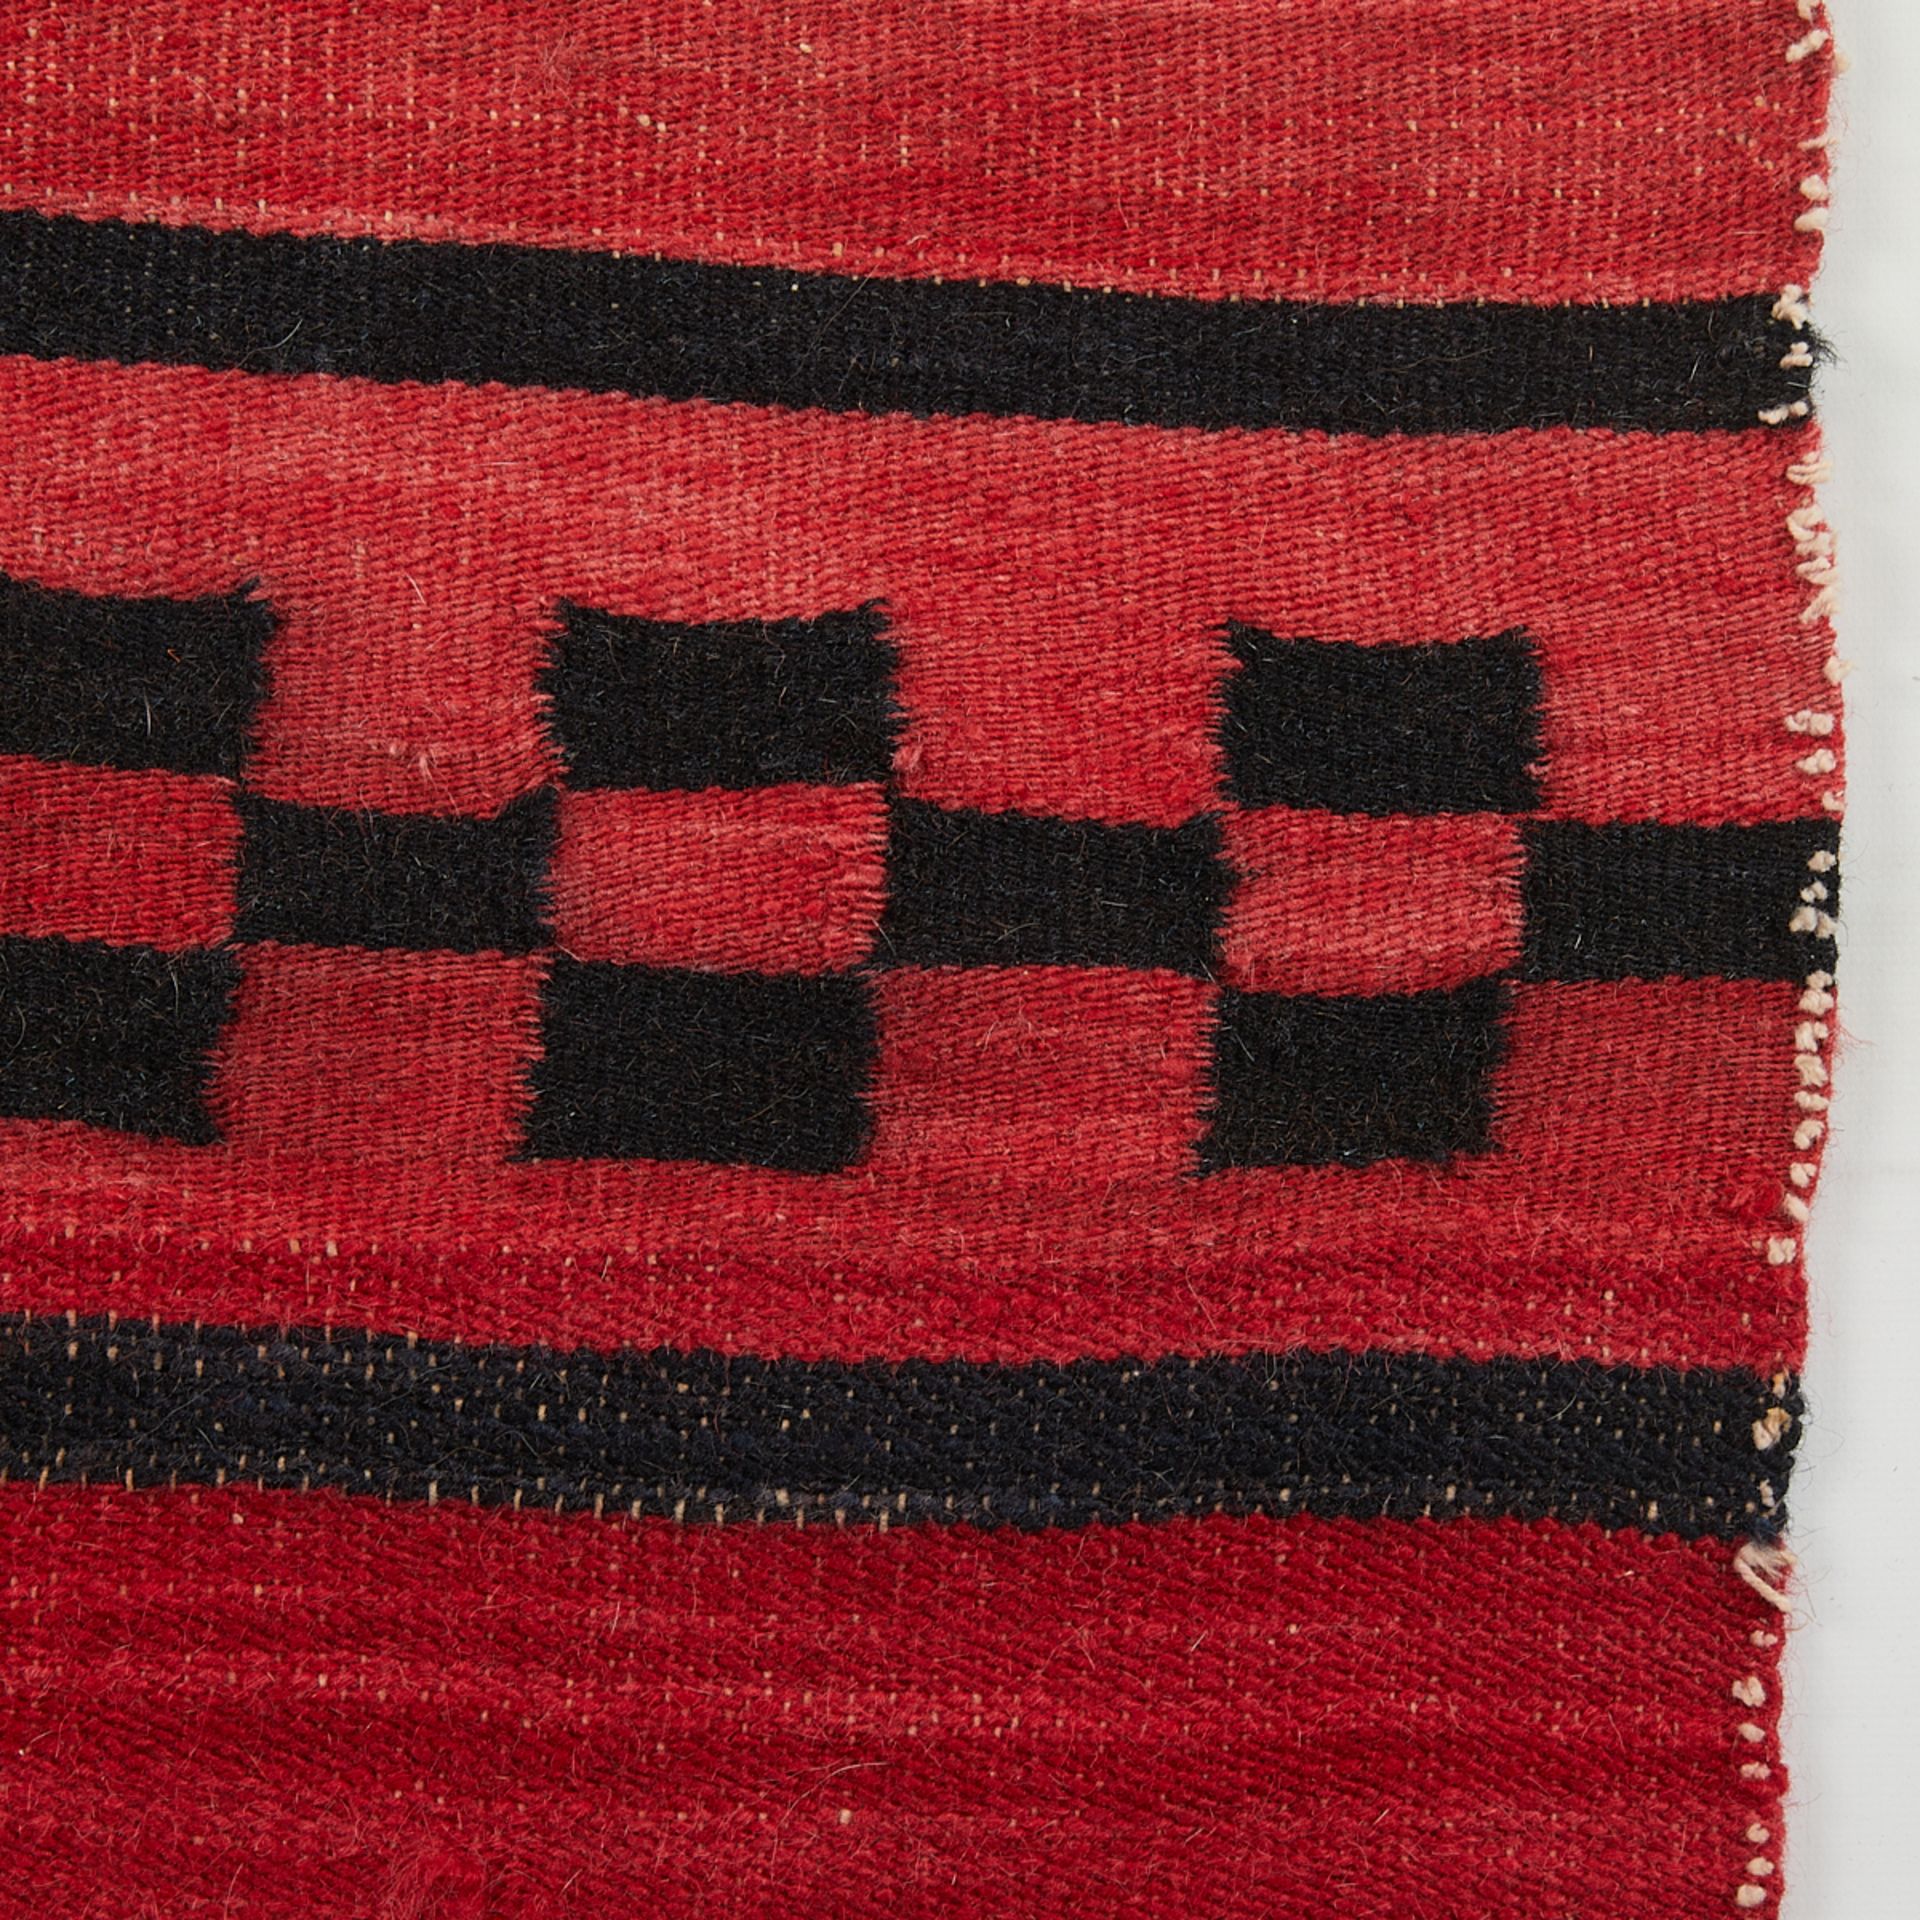 Rio Grande Wool Blanket or Wrap 7'5" x 2' - Image 4 of 5